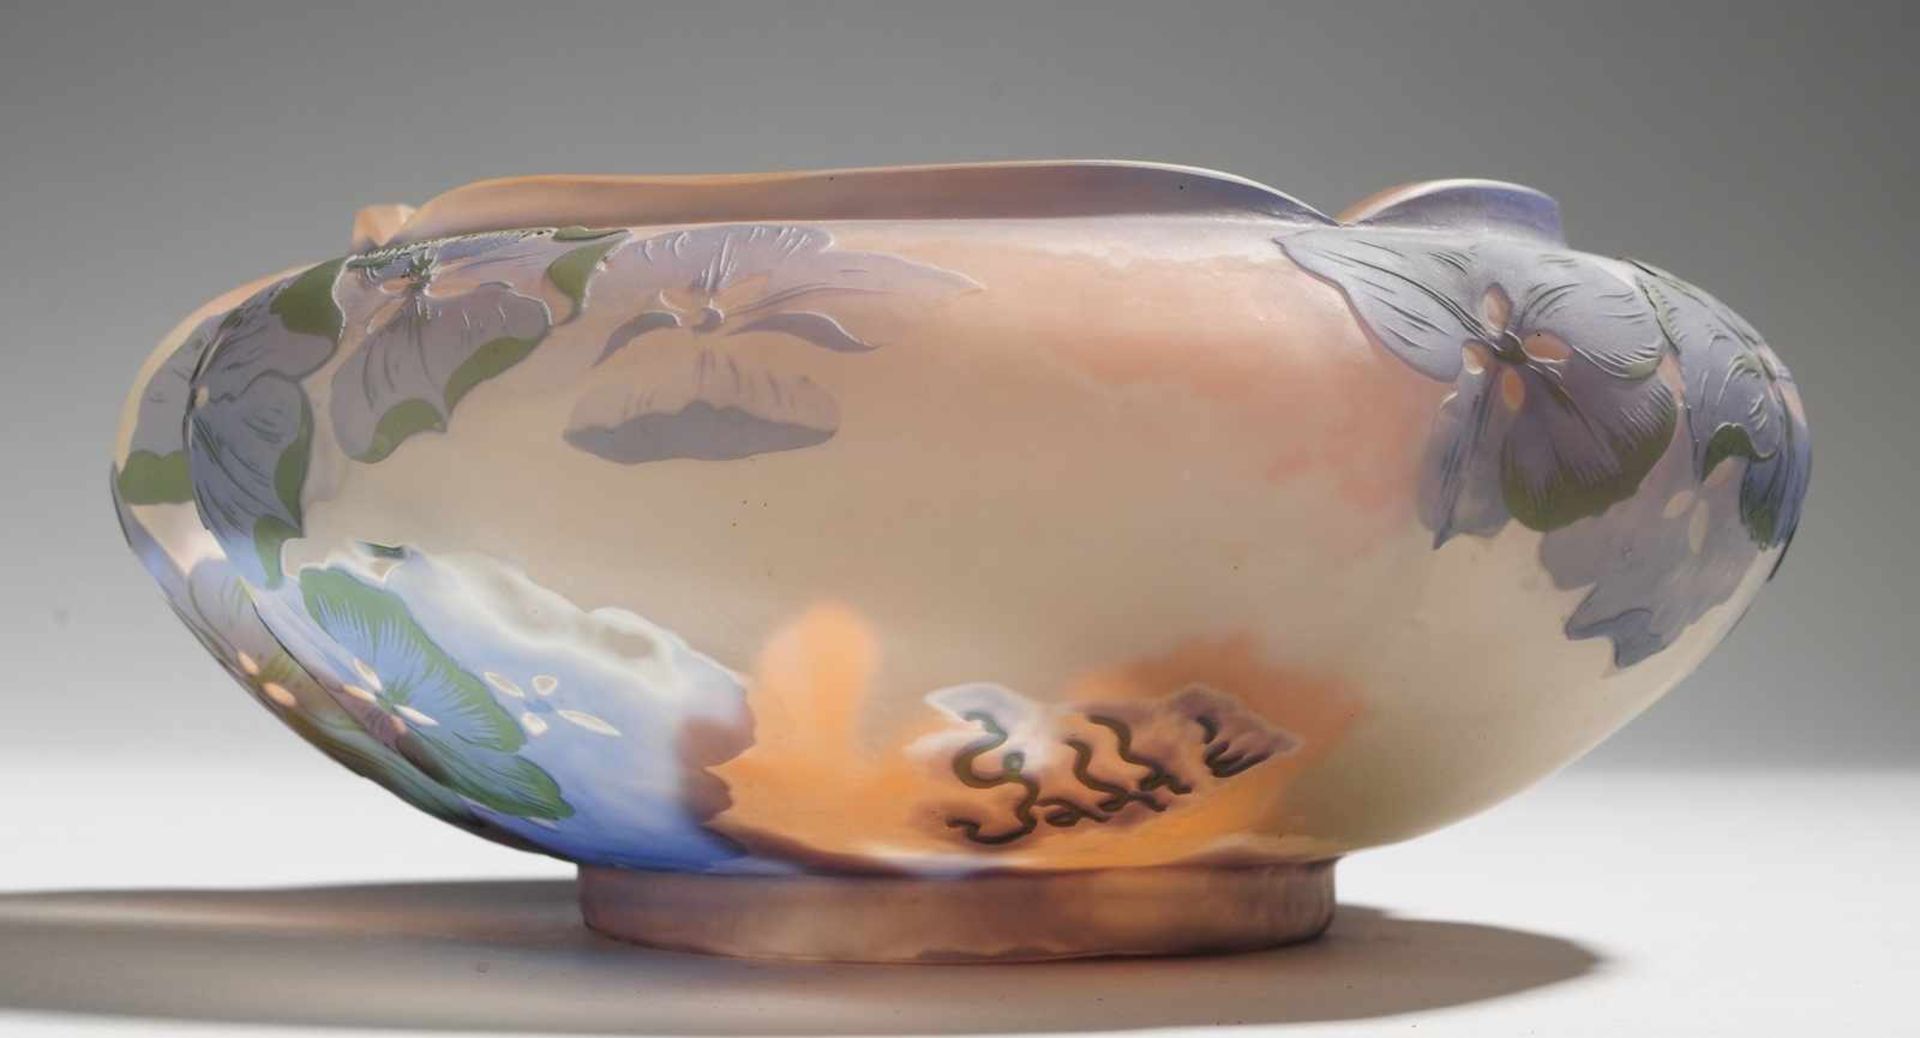 Jugendstil-Vase mit HortensieFarbloses Glas, innen rosafarben unter-, außen weiß, violett u. - Bild 2 aus 2